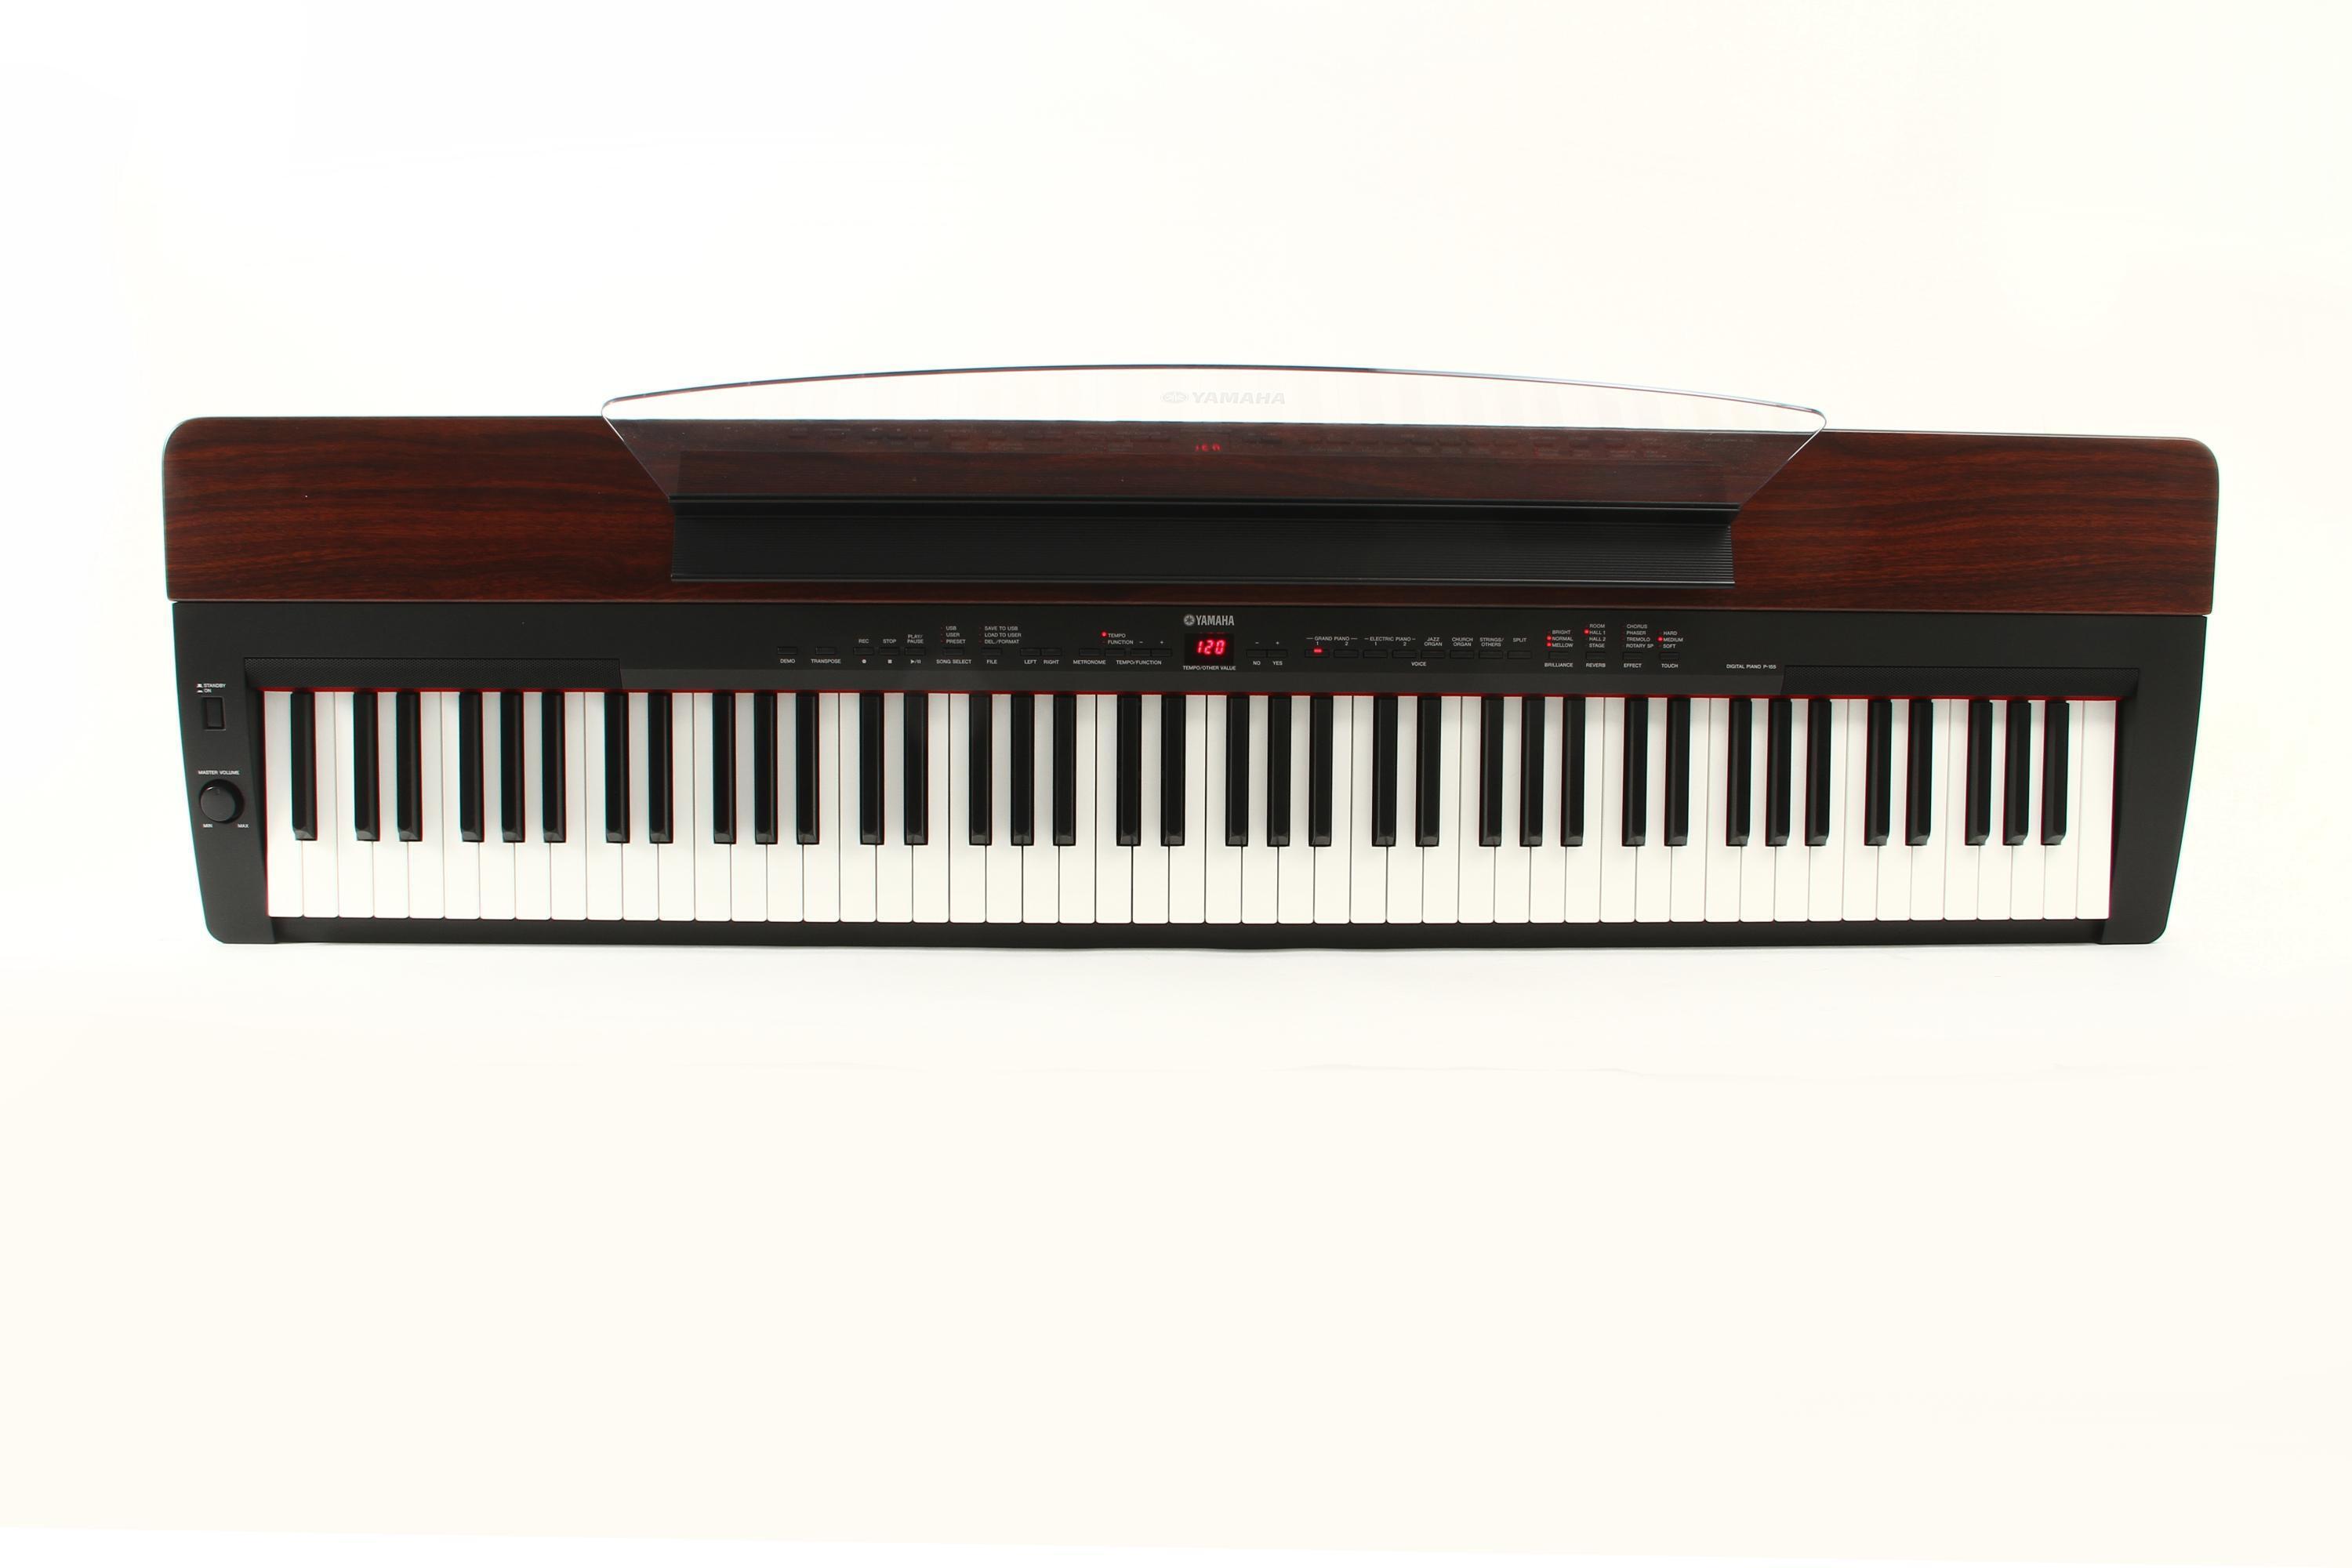 YAMAHAヤマハ 電子ピアノ P-155 2010年 - 鍵盤楽器、ピアノ